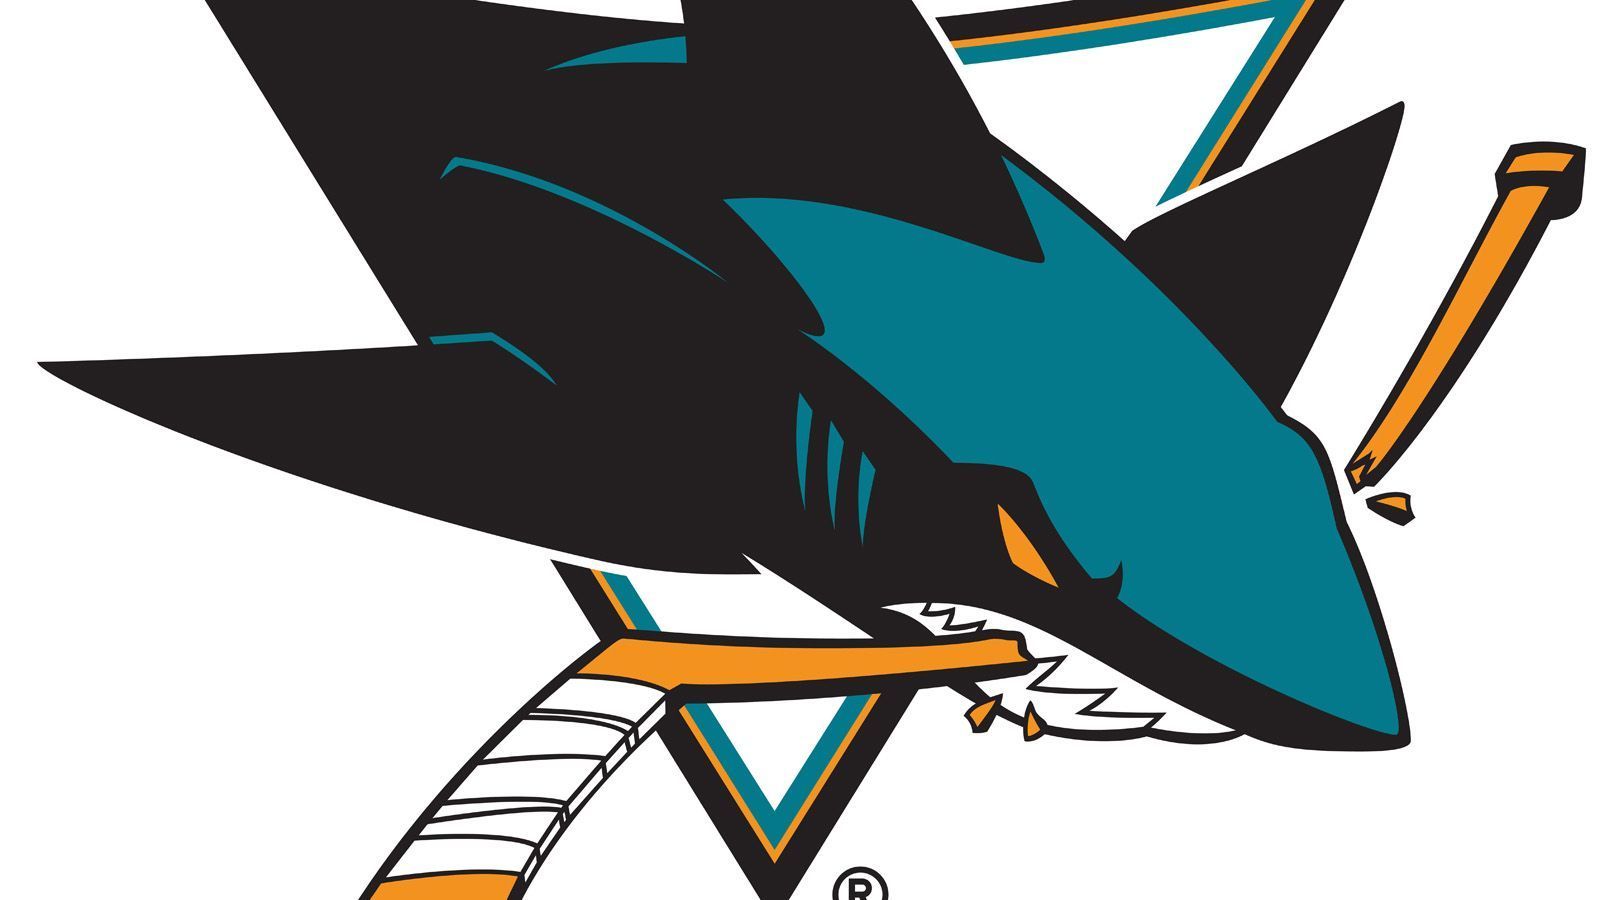 
                <strong>Eigentlich sollte das Eishockey-Team San Jose Blades heißen</strong><br>
                Eigentlich hätte dieses Team San Jose Blades heißen sollen. Dieser Vorschlag war jedenfalls der Gewinner einer Fan-Umfrage. Allerdings wurde der Begriff Blades in den USA damals mit Bandenkriminalität in Verbindung gebracht, weshalb der Name wieder verworfen wurde. Sharks wurde daraufhin wegen der vielen Haie an der kalifornischen Küste auserwählt (siehe auch unsere Galerie: NHL: Die Geschichte hinter den 32 Teamnamen)
              